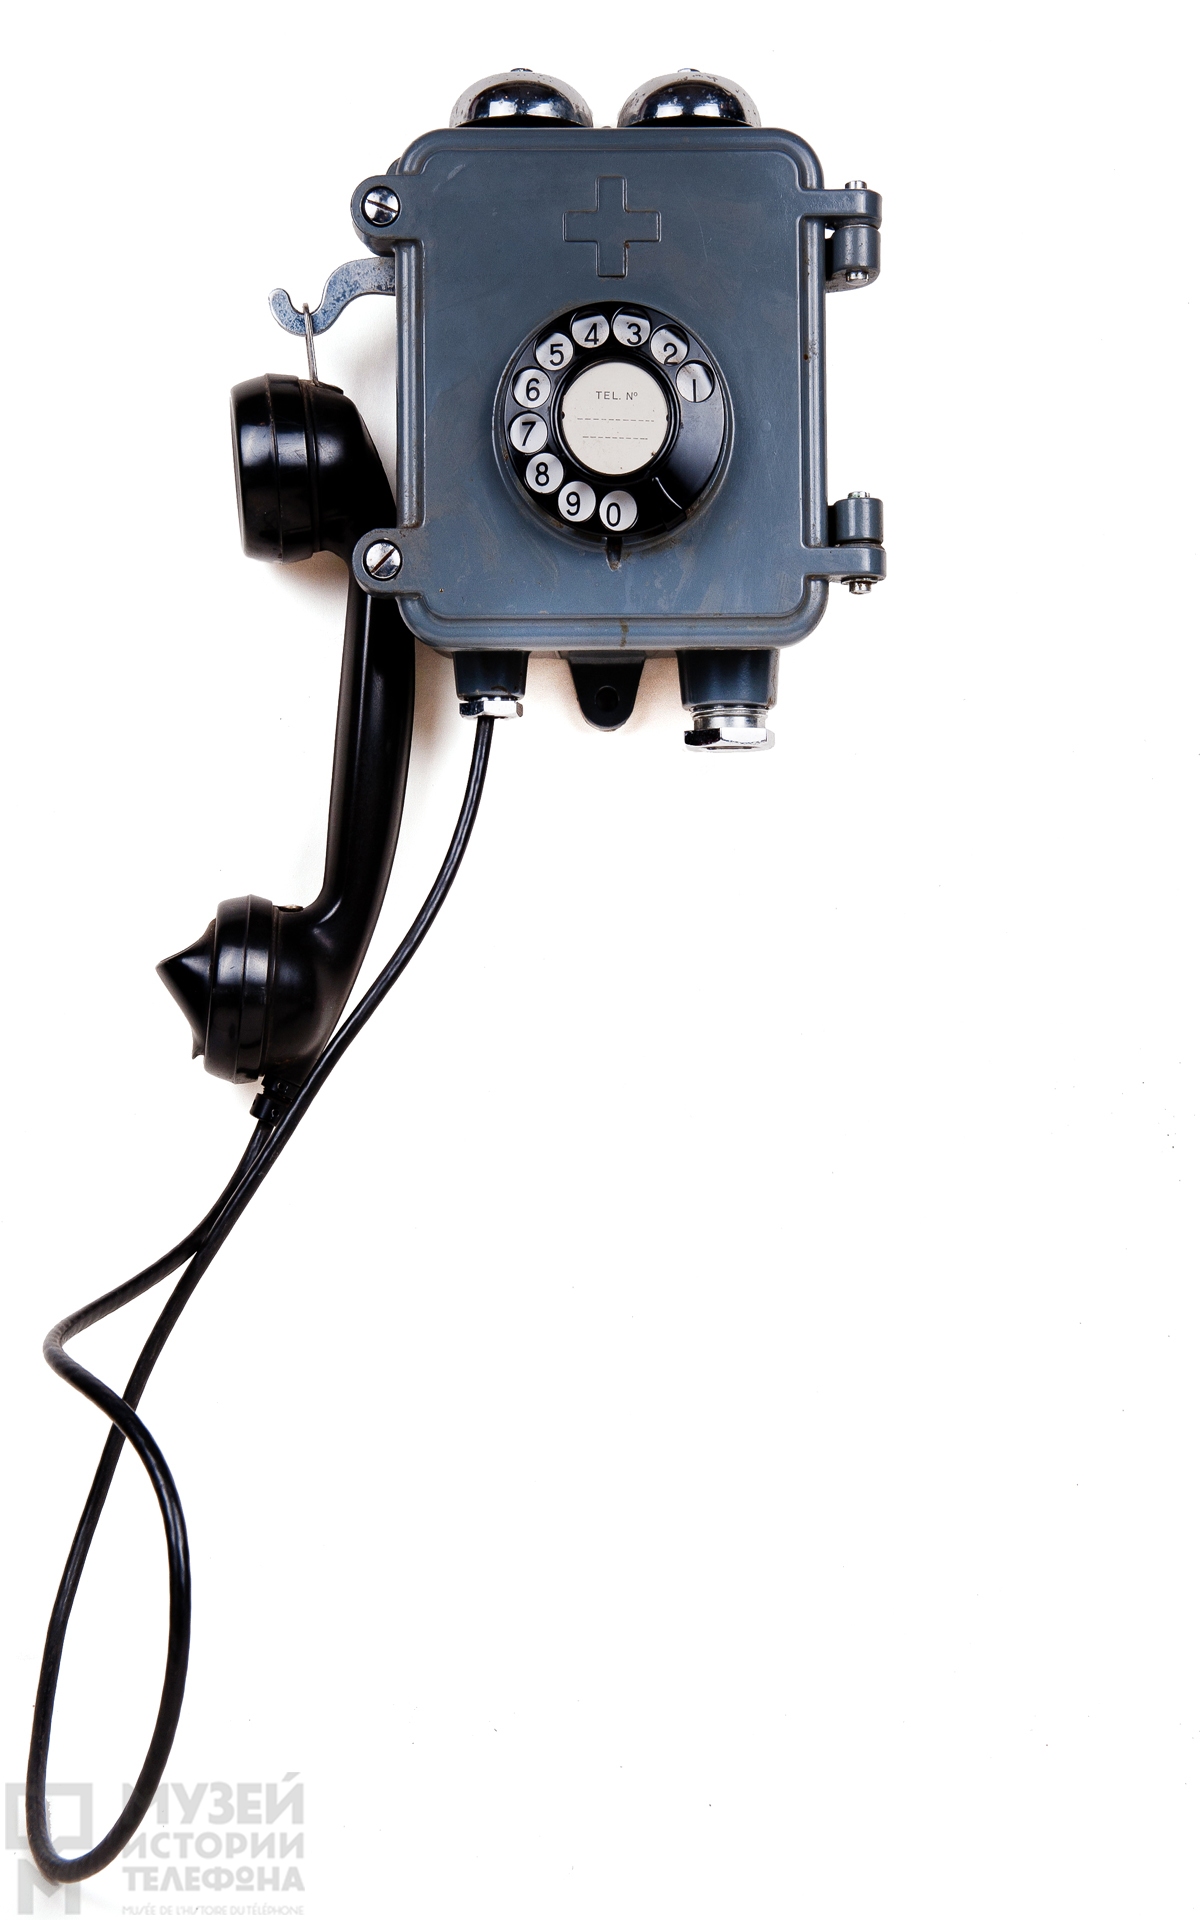 Влагозащищённый телефонный аппарат системы АТС в литом металлическом корпусе